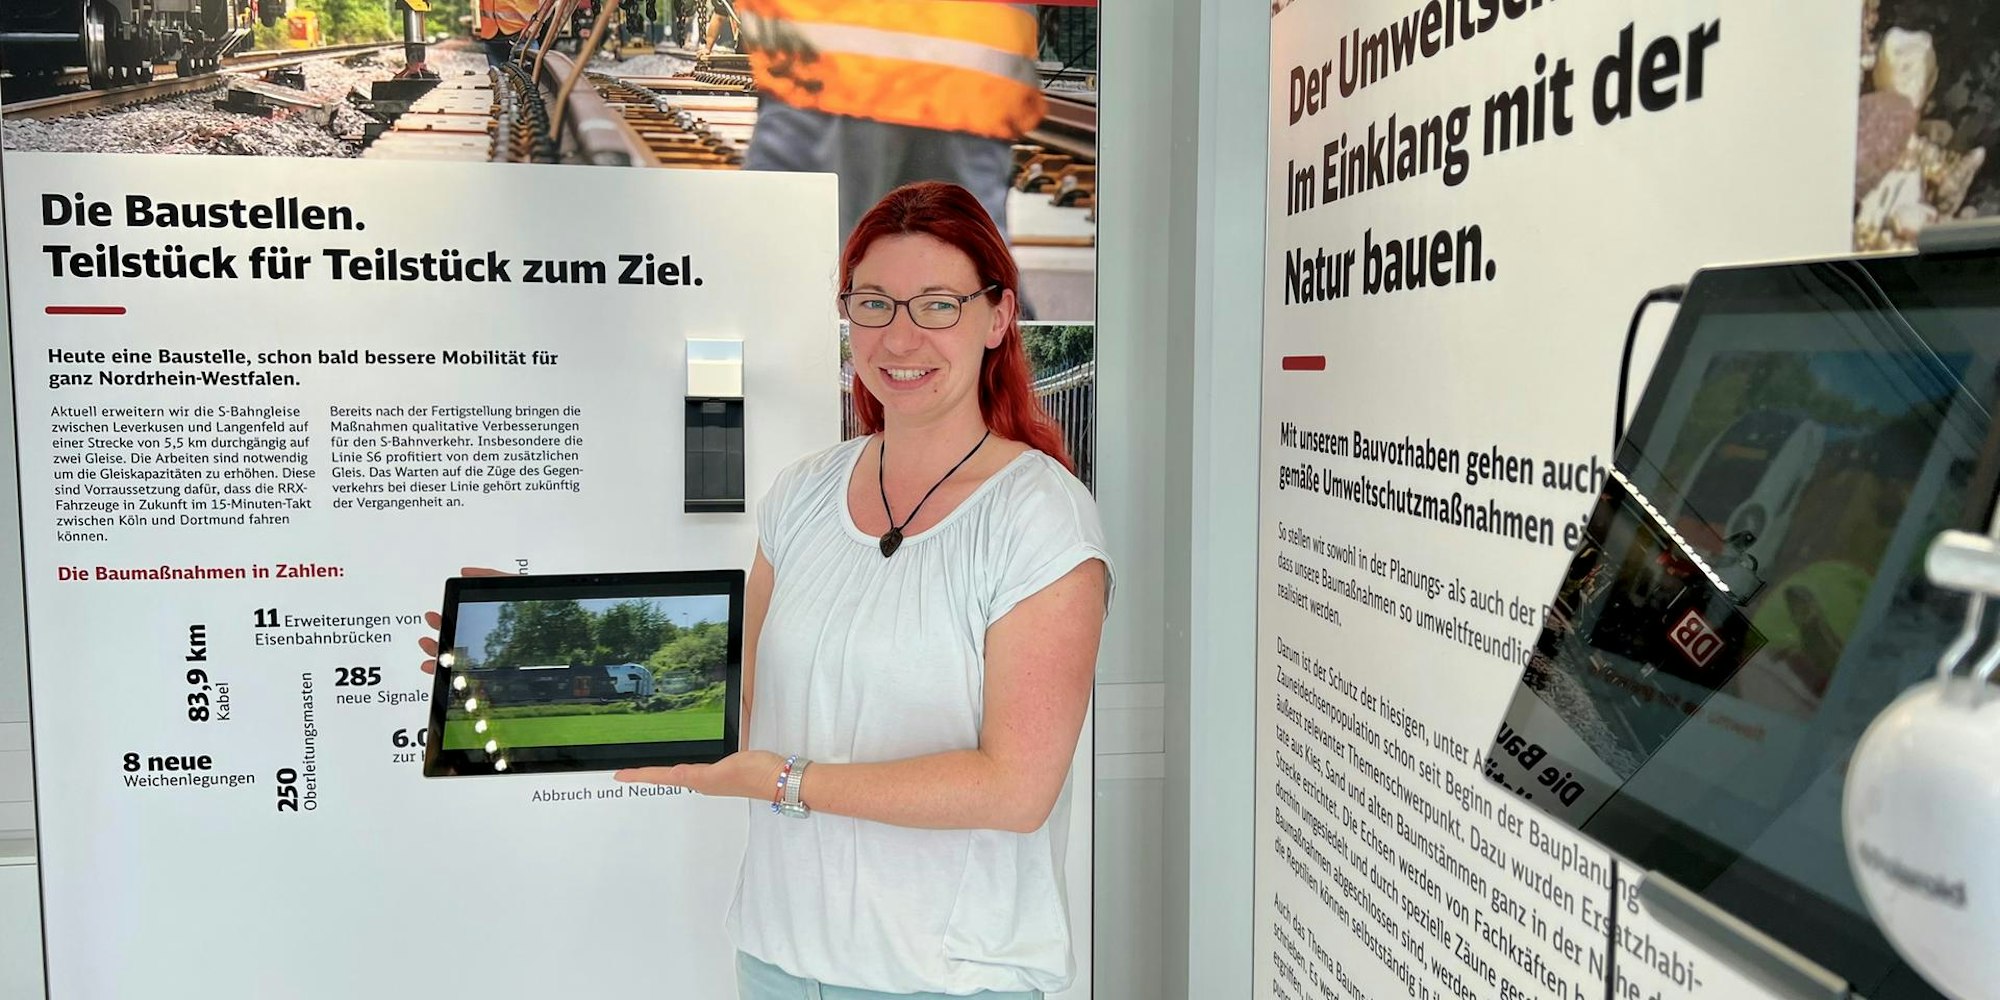 Sandra Schwarz und eine Kollegin führen Besucher auch durch die Ausstellung im neuen Bauinformationszentrum der Deutschen Bahn am Bahnhof Mitte.